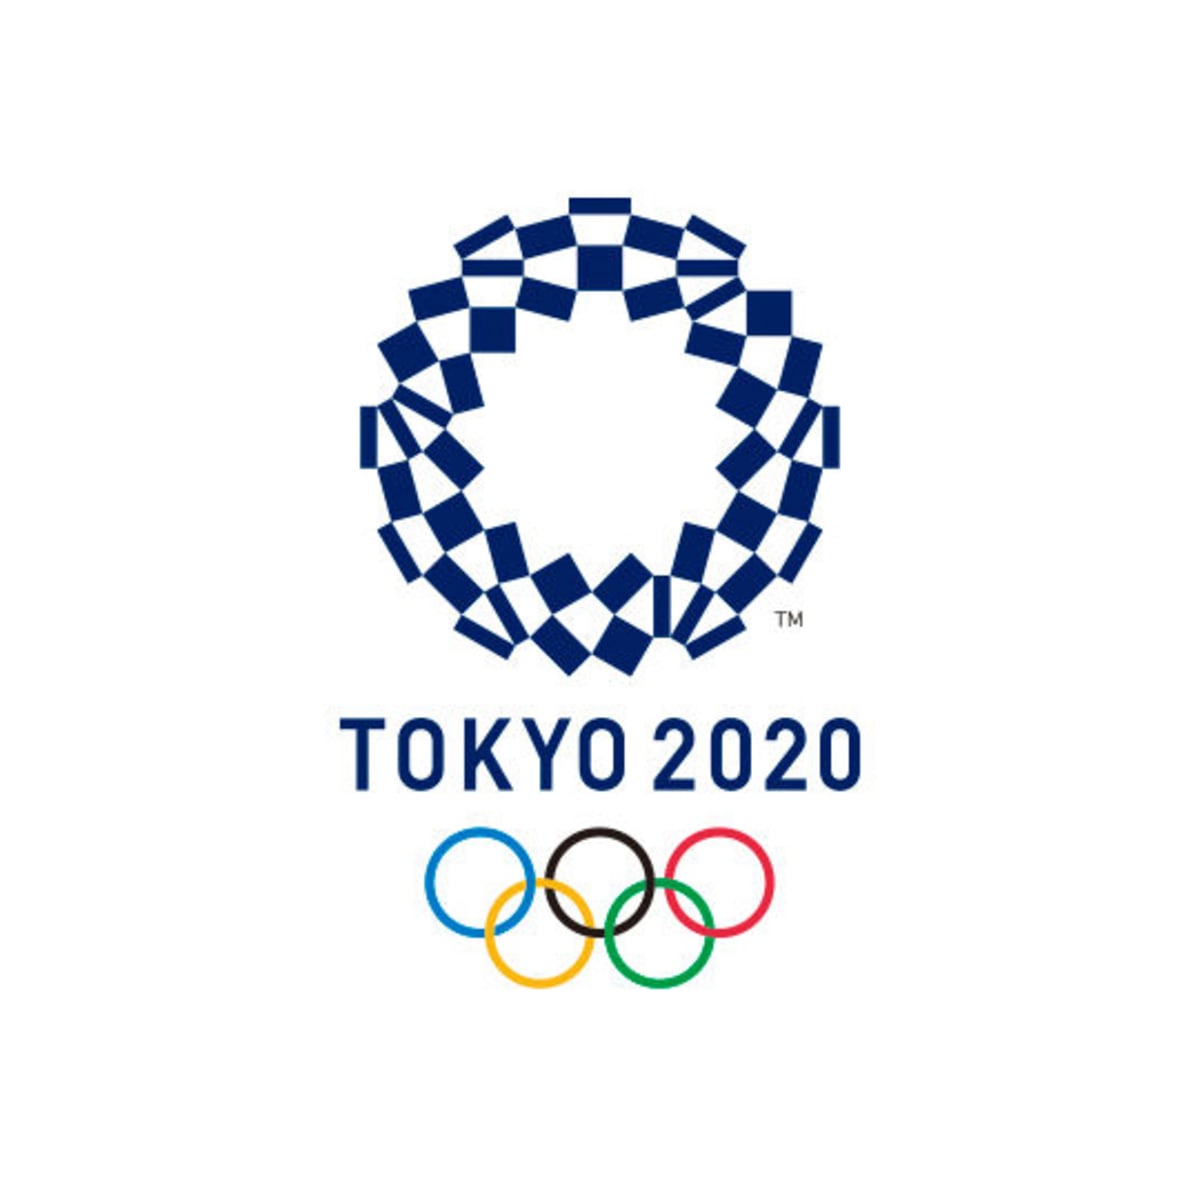 Tokyo 2020 Selection Policy Amendment